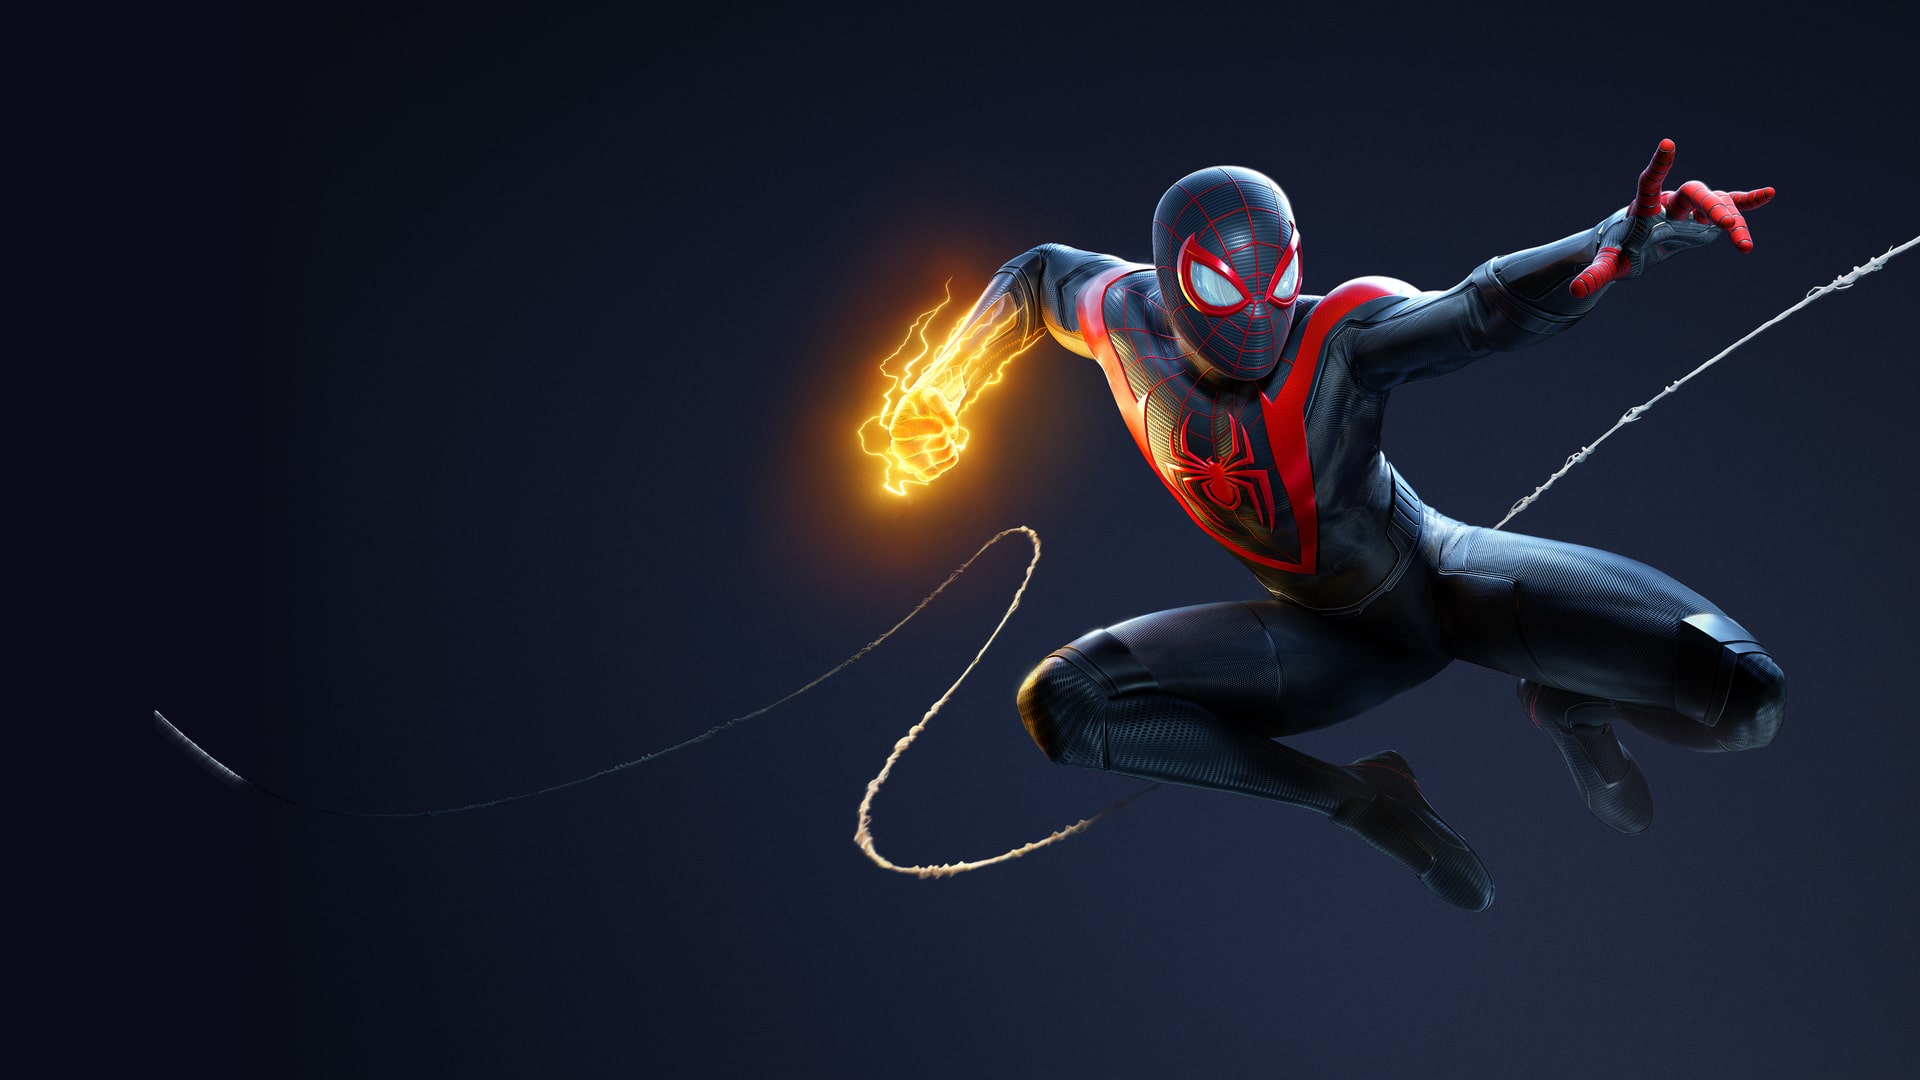 ゲームソフトゲーム機本体Marvel’s Spider-Man： Miles Morales（スパイダー